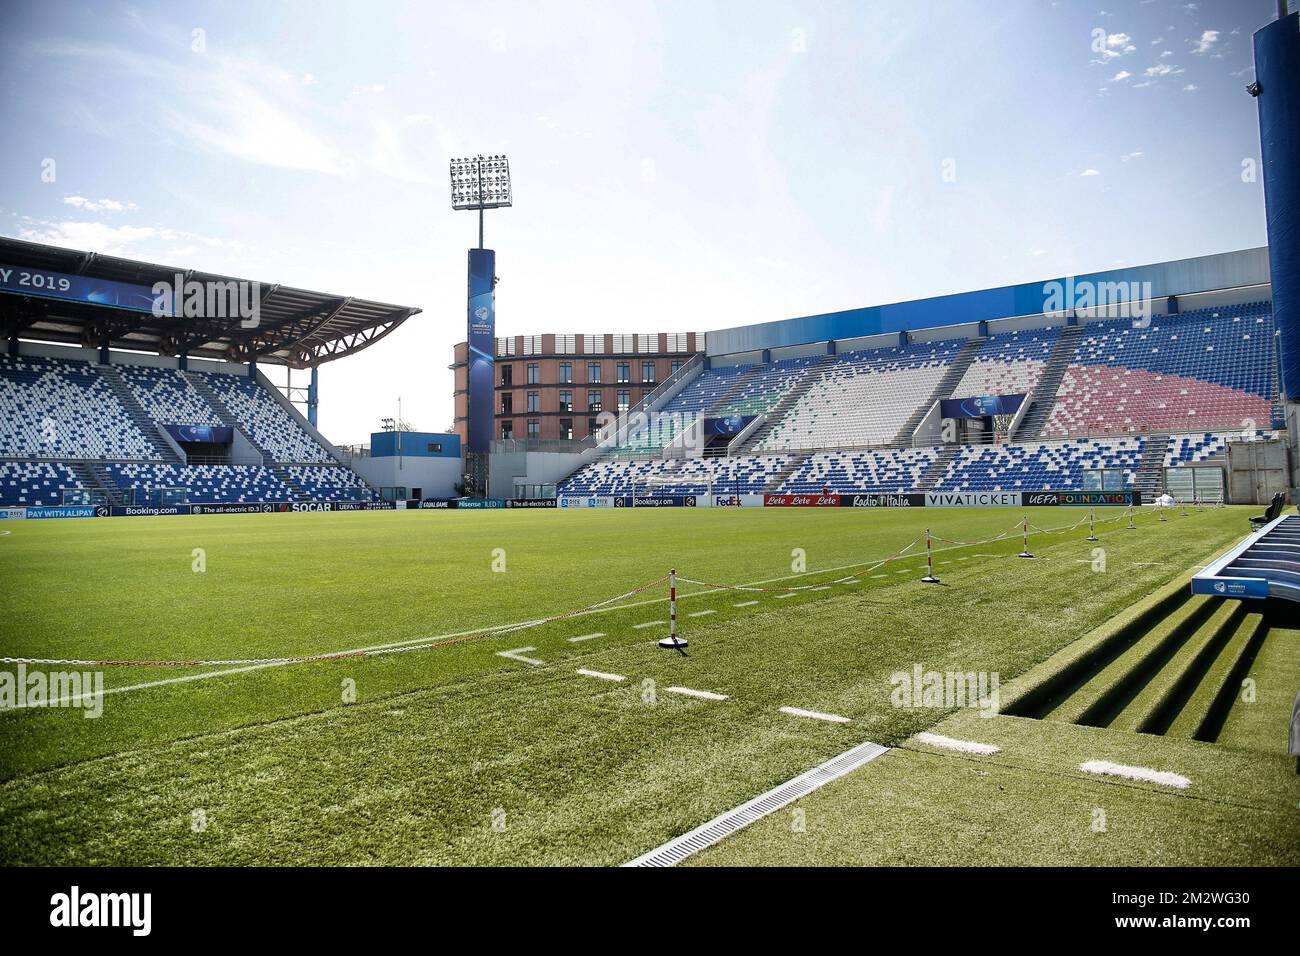 L'immagine mostra lo stadio 'Stadio-Città del Tricolore' della squadra di  calcio Unione sportiva Sassuolo Calcio, a Sassuolo, Italia, venerdì 14  giugno 2019. Domenica U21 la squadra nazionale belga di calcio giocherà la